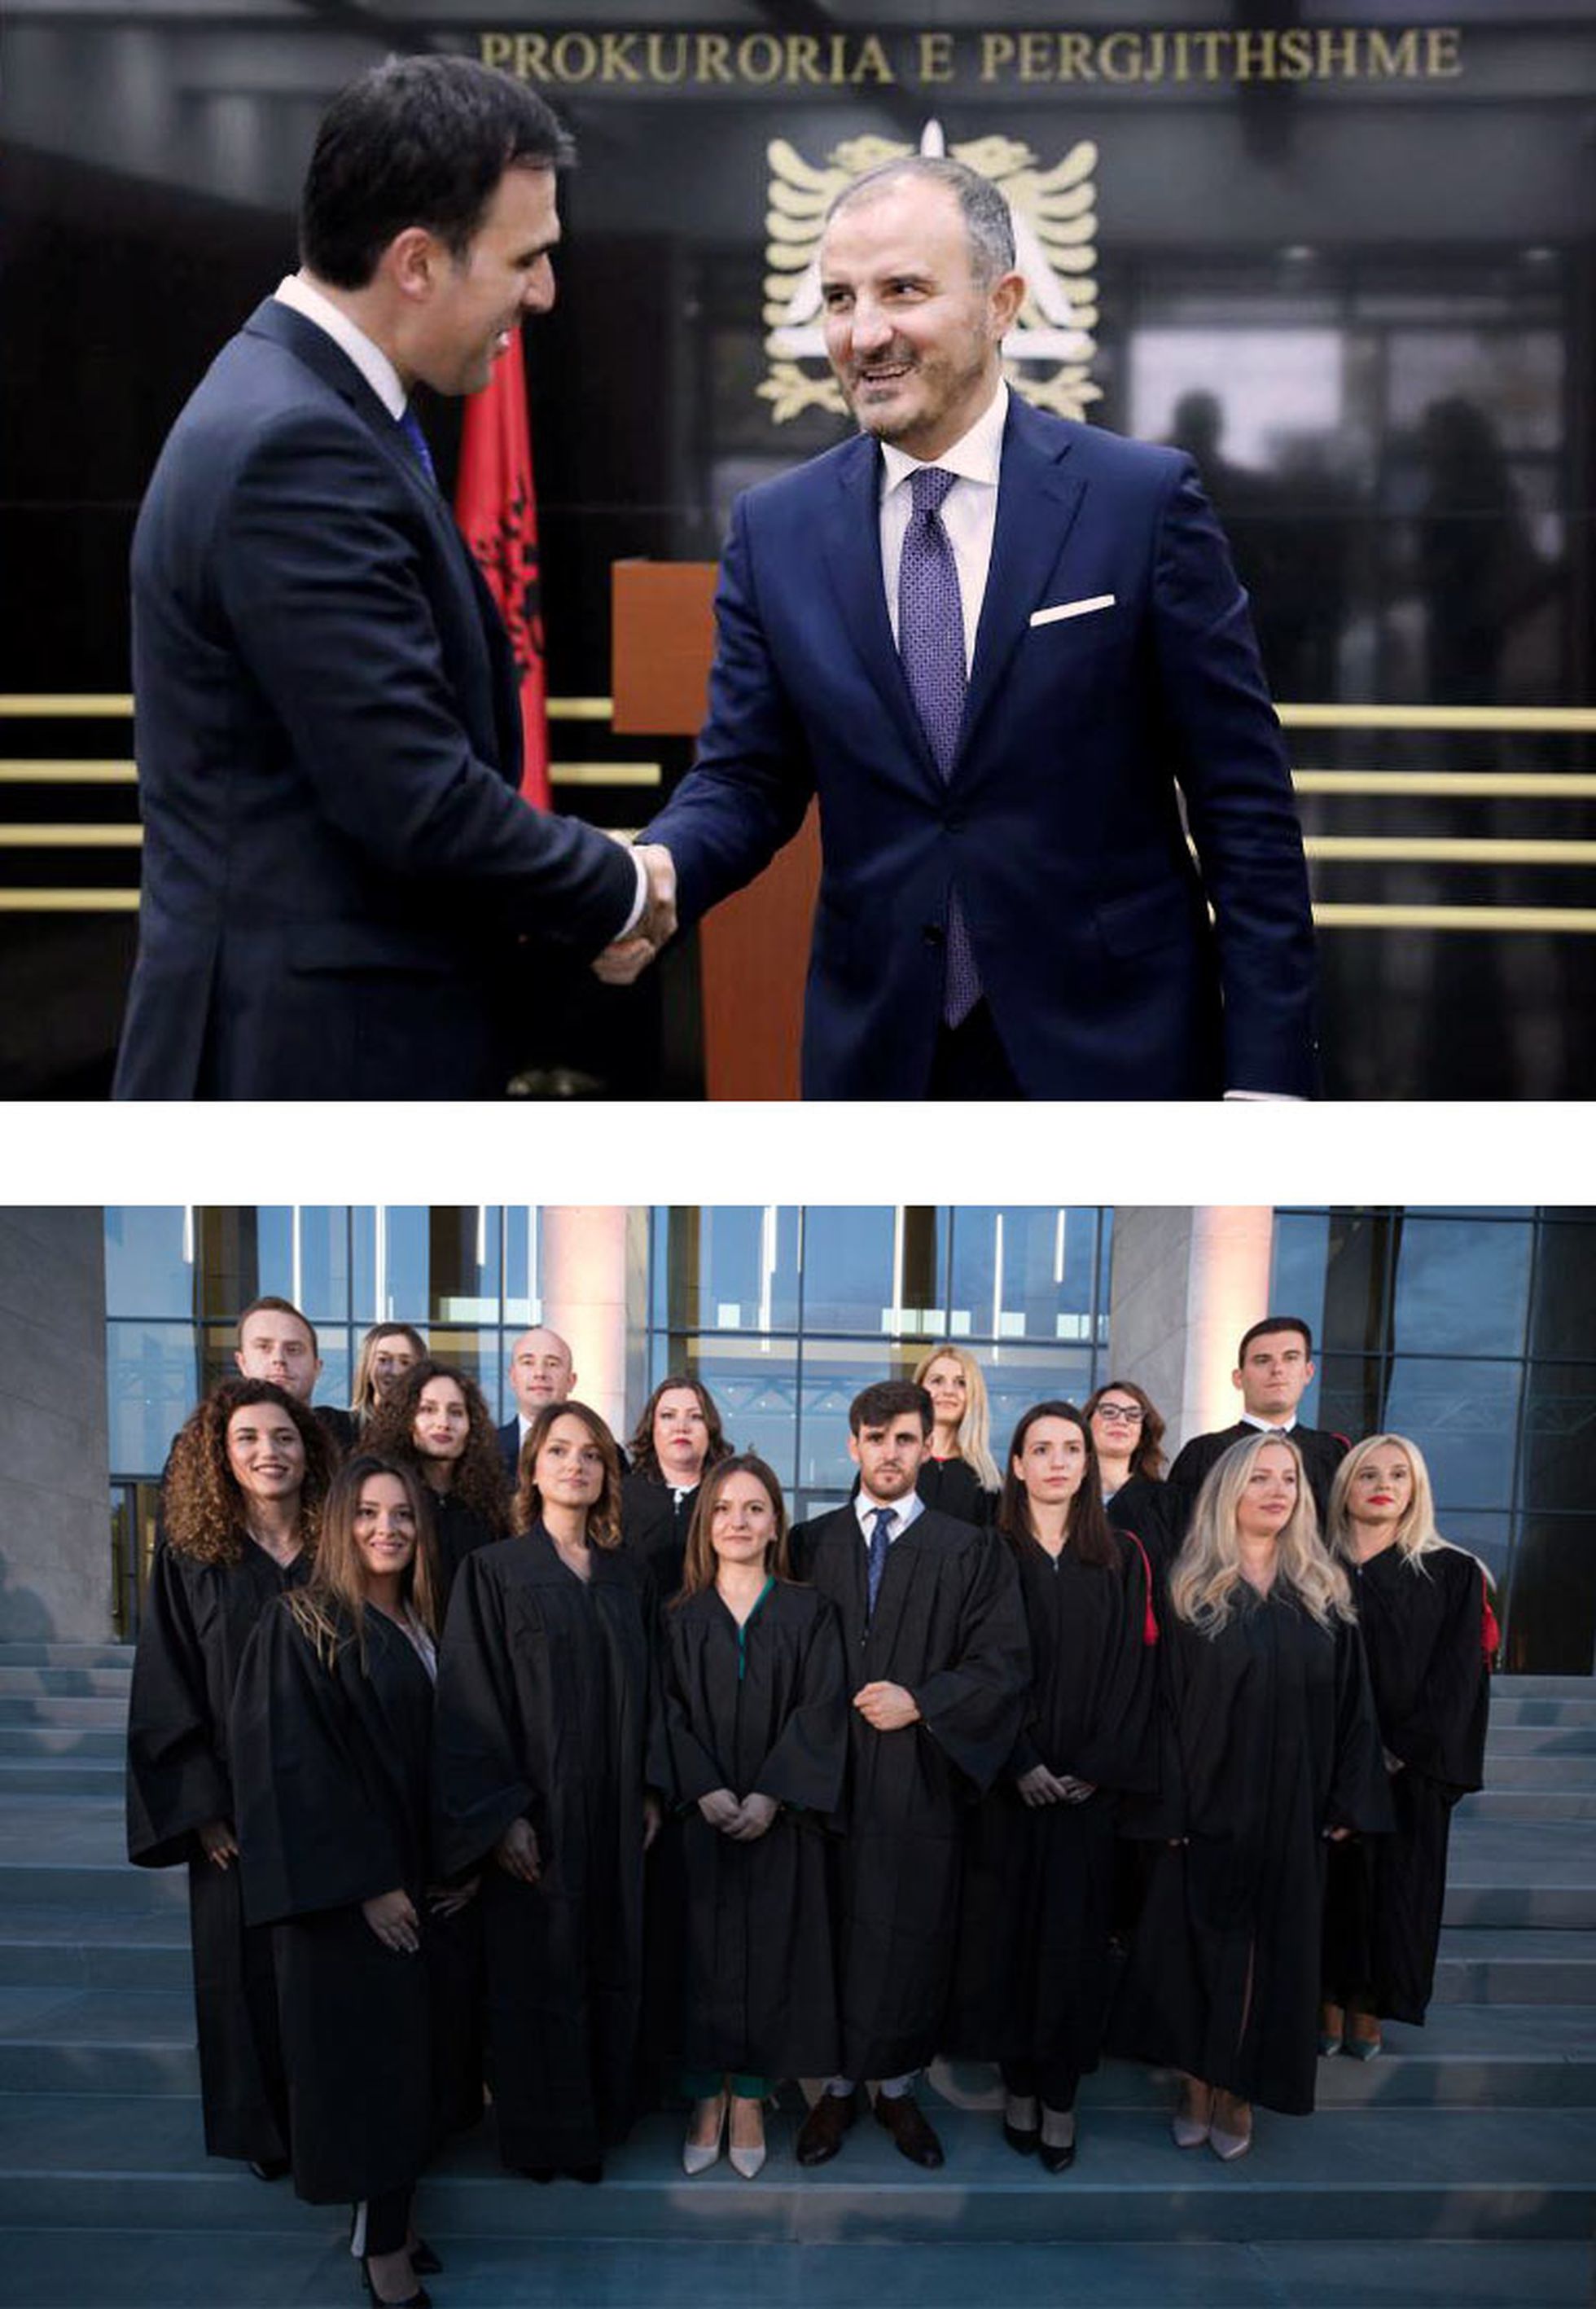 Arriba, el fiscal general de Albania, Olsian Çela, y el embajador de la UE Luigi Soreca. Abajo, jura de nuevos magistrados en julio de 2019 en Tirana.